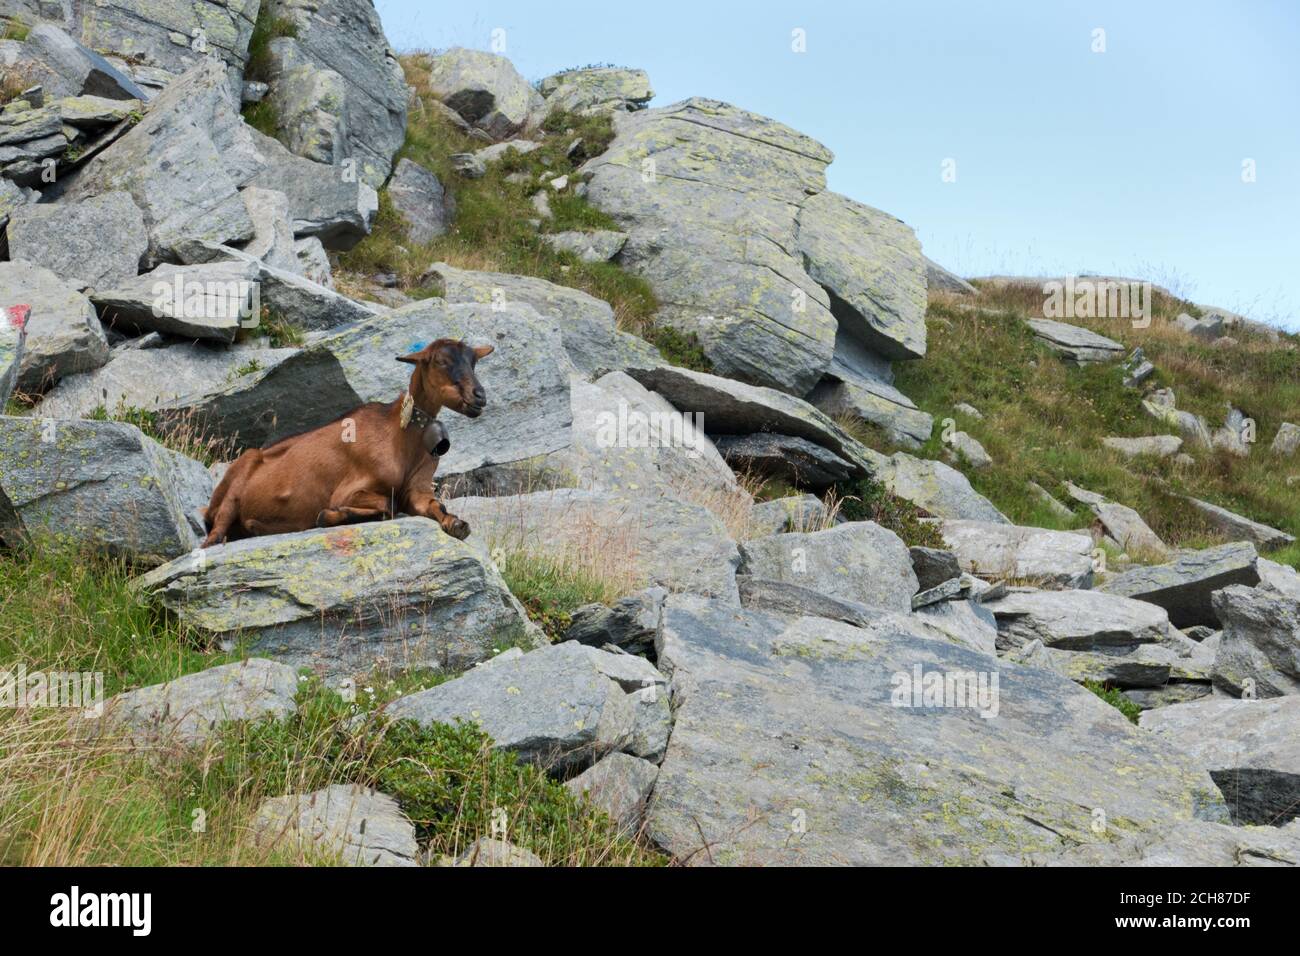 Braune weibliche Ziege mit einer Glocke, die auf einem Felsen ruht. Stockfoto